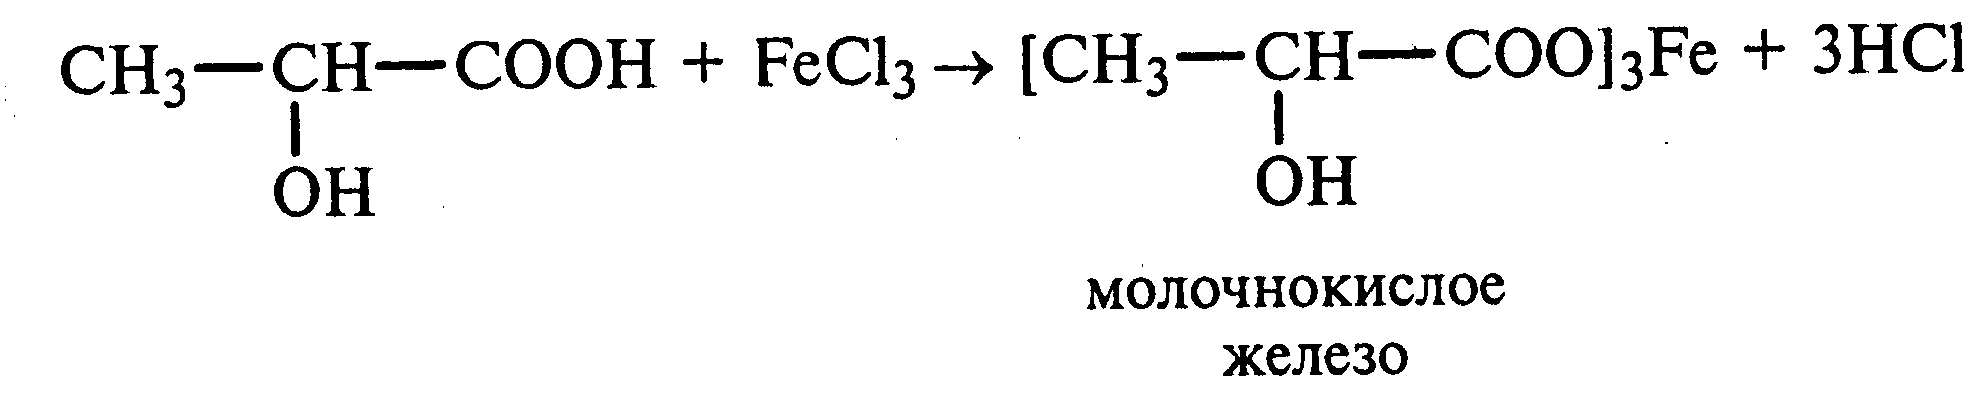 Этановая кислота гидроксид калия